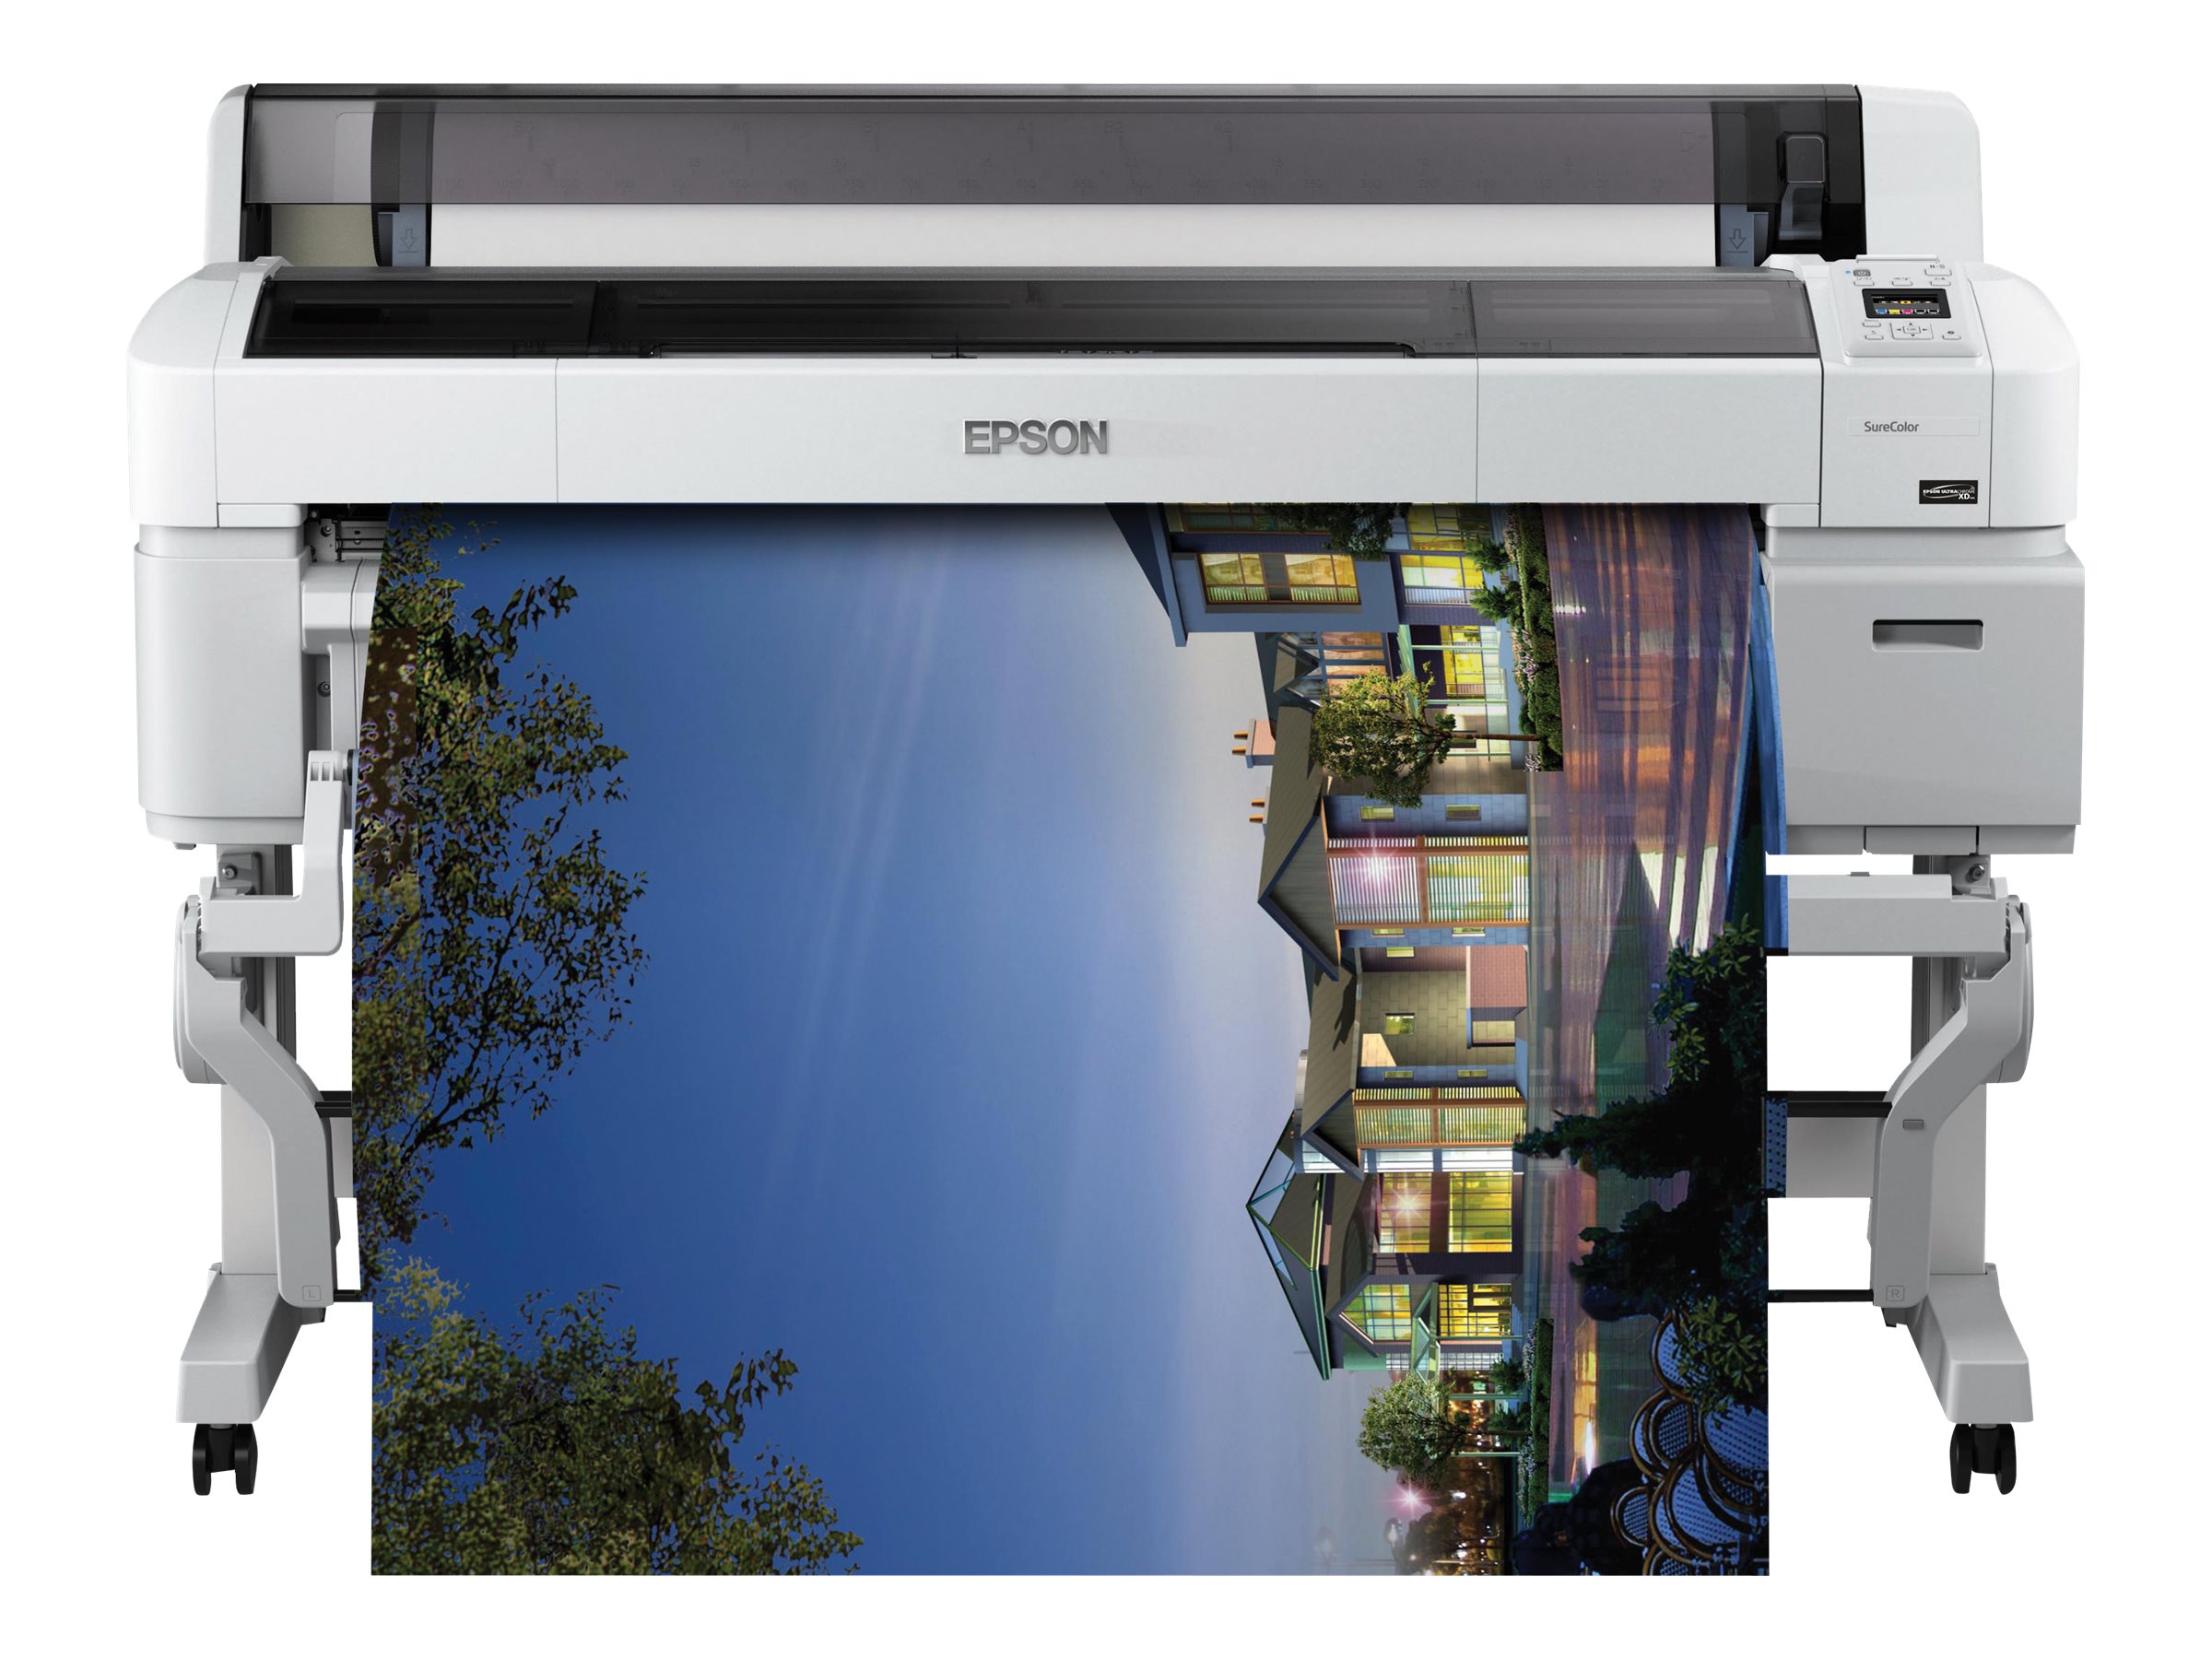 Epson SureColor SC-T7200D-PS - 44" imprimante grand format - couleur - jet d'encre - Rouleau (111,8 cm) - 2 880 x 1 440 dpi - jusqu'à 2.14 impressions/min (mono) / jusqu'à 2.14 impressions/min (couleur) - USB 2.0, Gigabit LAN - outil de coupe - C11CD41301EB - Imprimantes jet d'encre